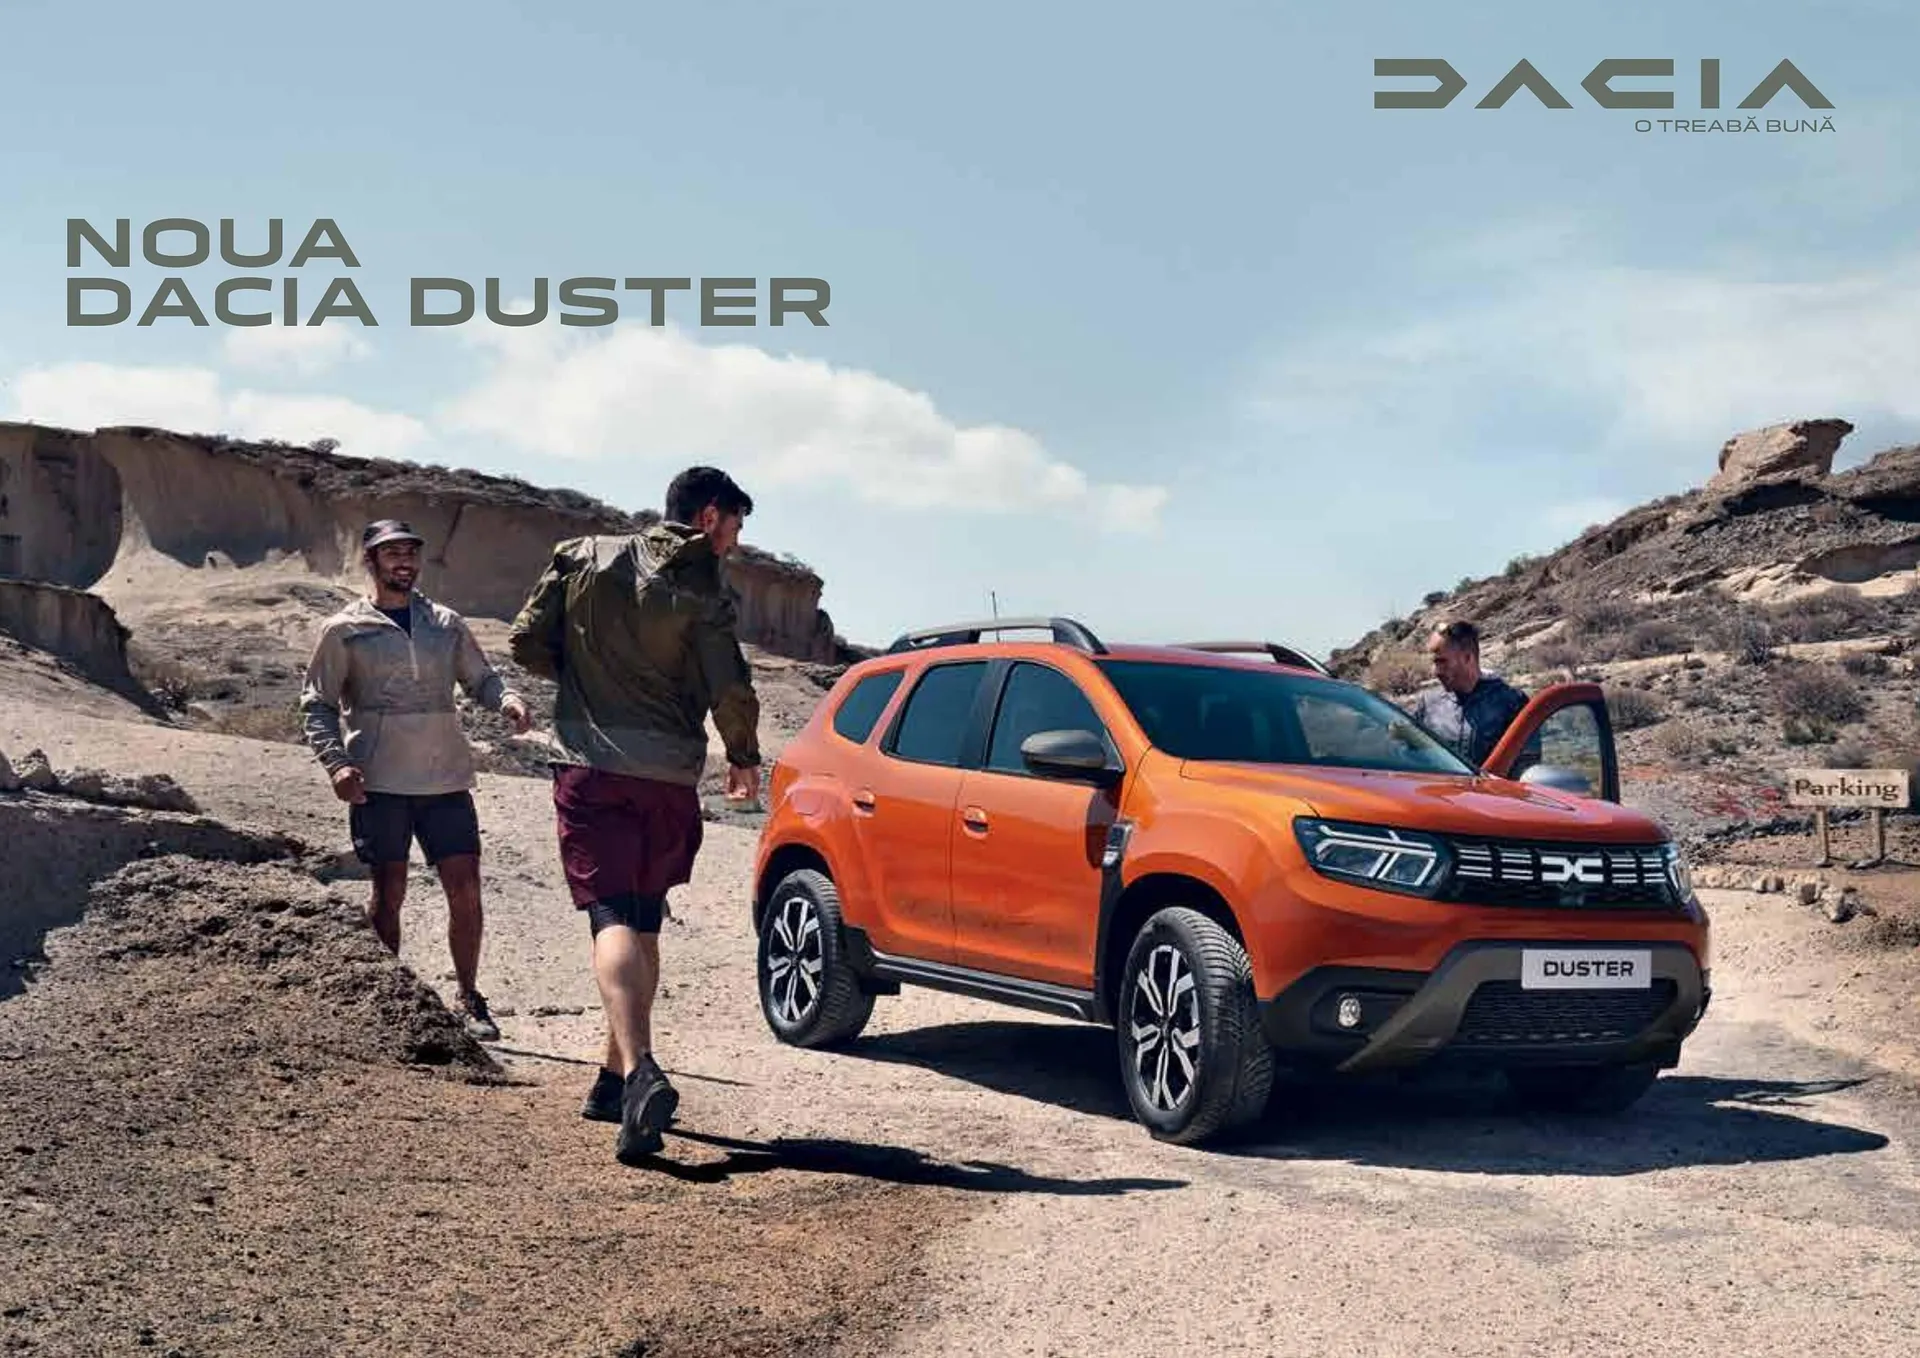 Dacia NOUL DUSTER catalog - 1